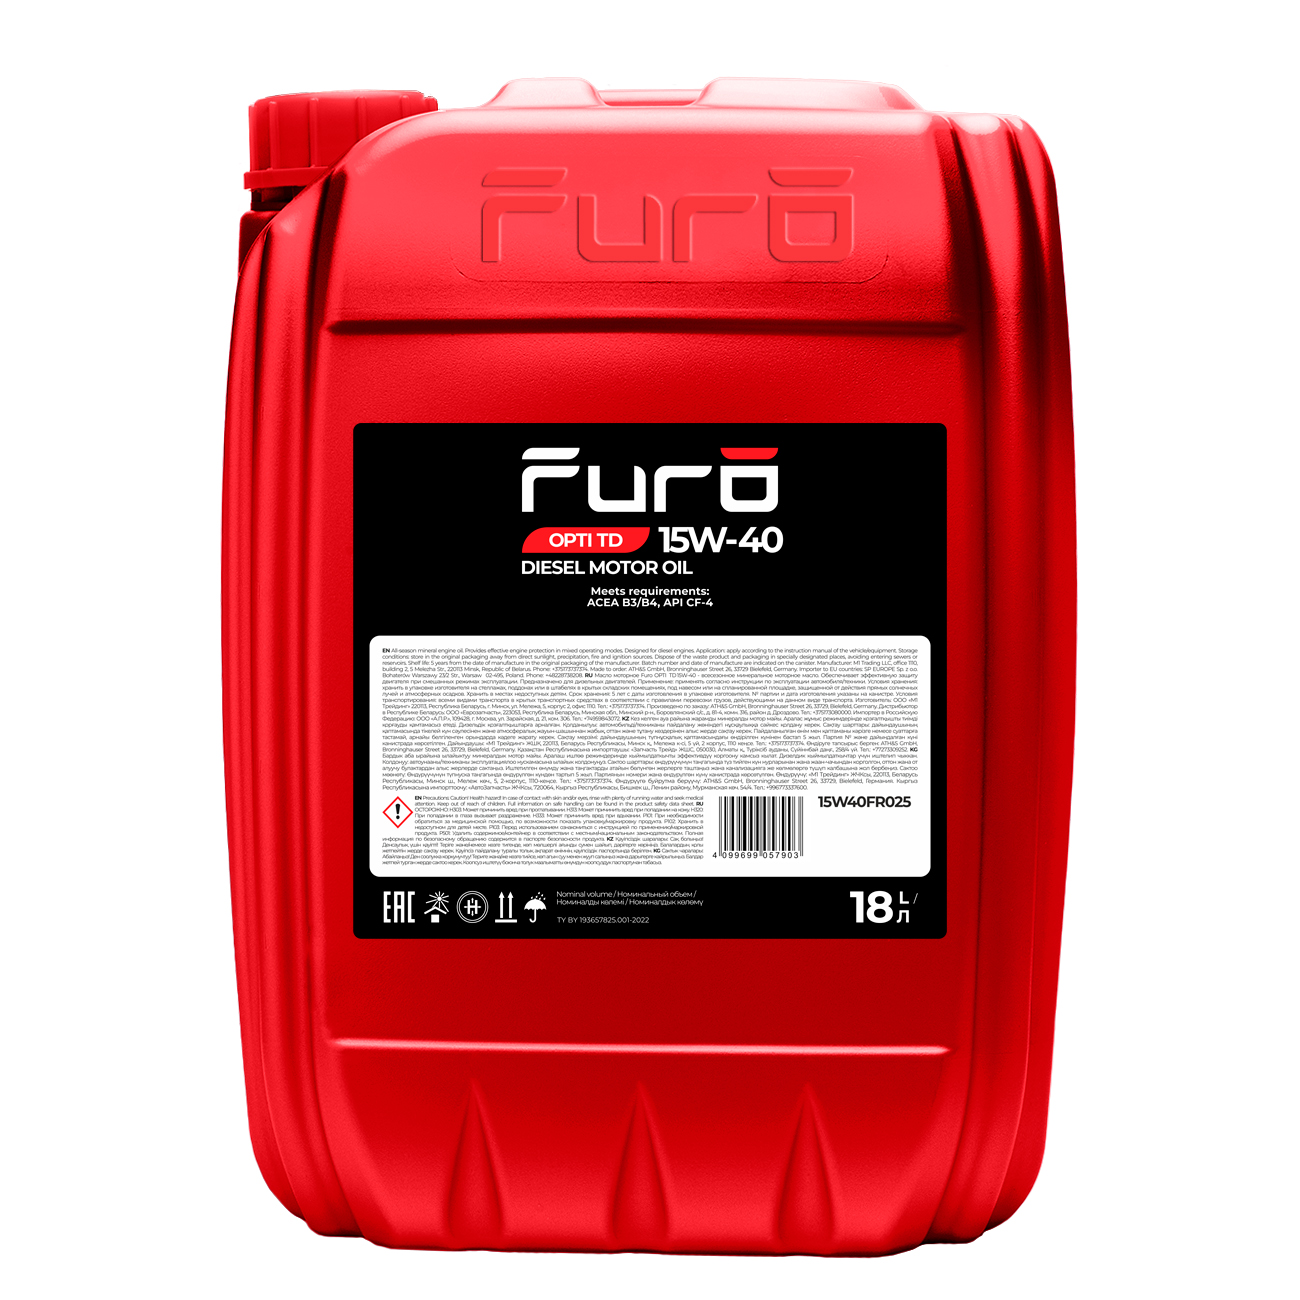 Моторное масло FURO OPTI TD 15W40FR025 15W40 минеральное 18 л